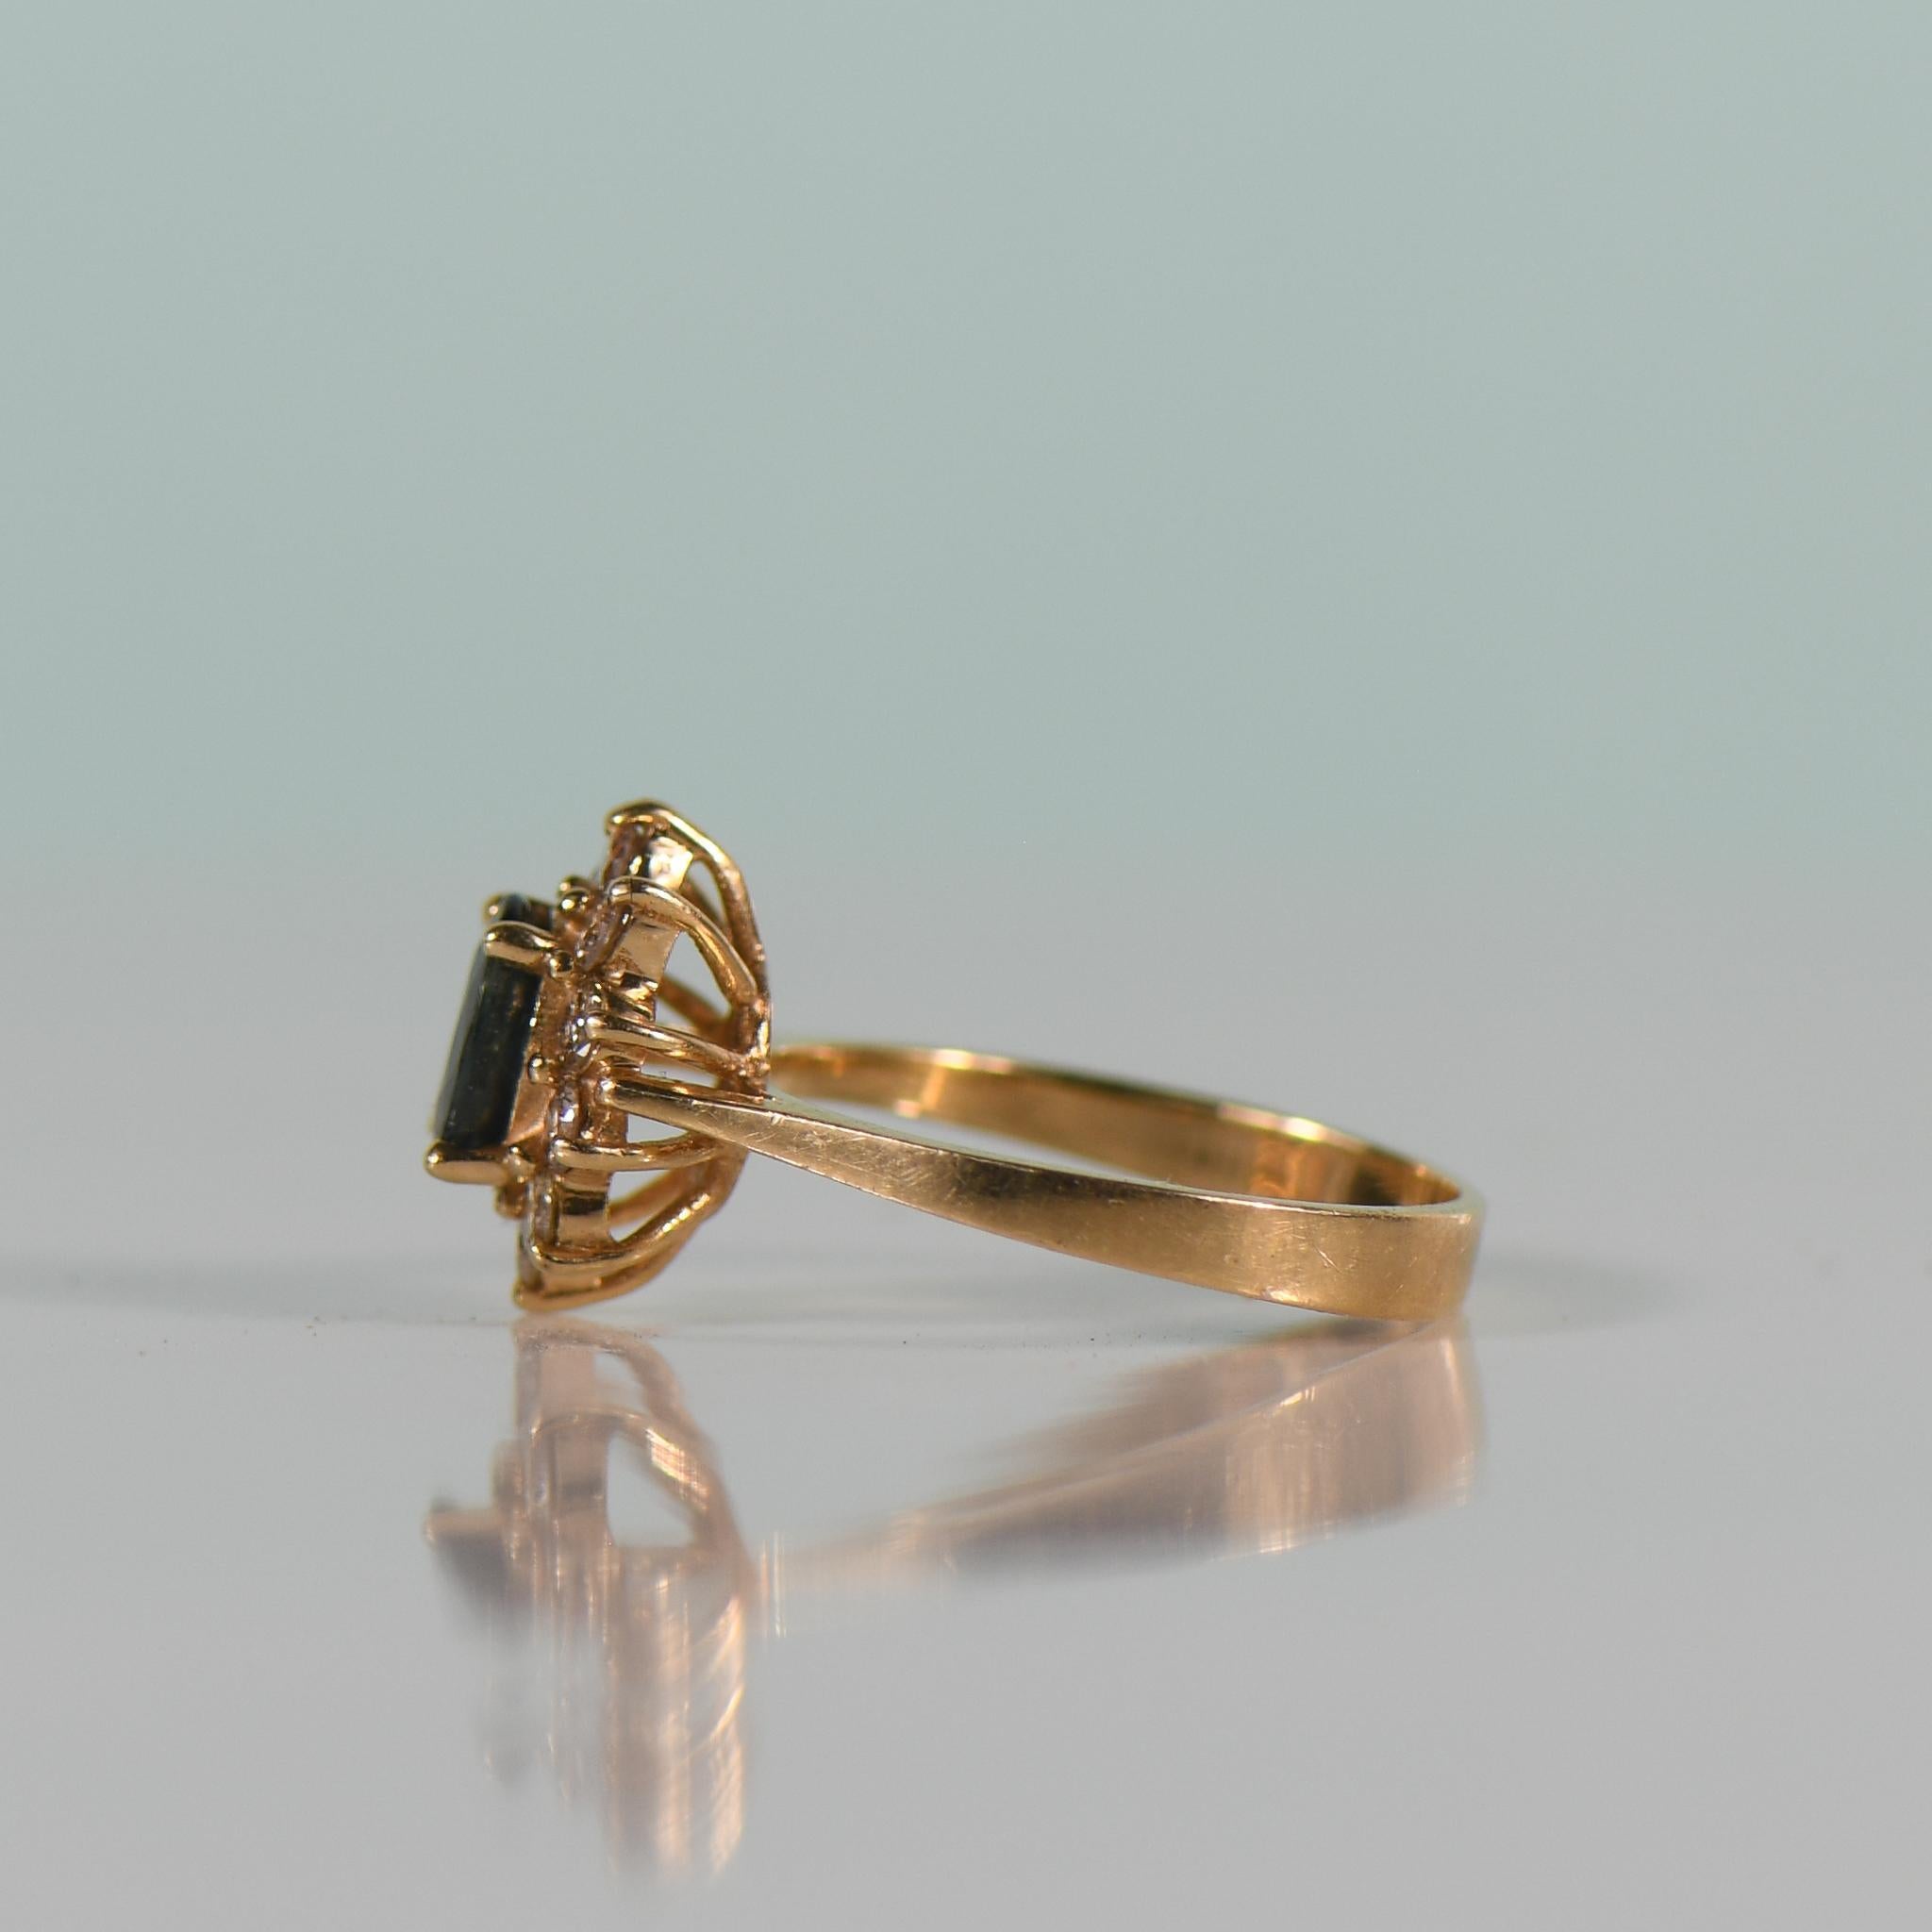 Treten Sie ein in eine Welt der Verzauberung mit diesem fesselnden Ring aus 14-karätigem Gold mit einem faszinierenden 1,1-karätigen nachtblauen Saphir, der von einem Heiligenschein aus funkelnden Diamanten von insgesamt 0,33 Karat umgeben ist. Der